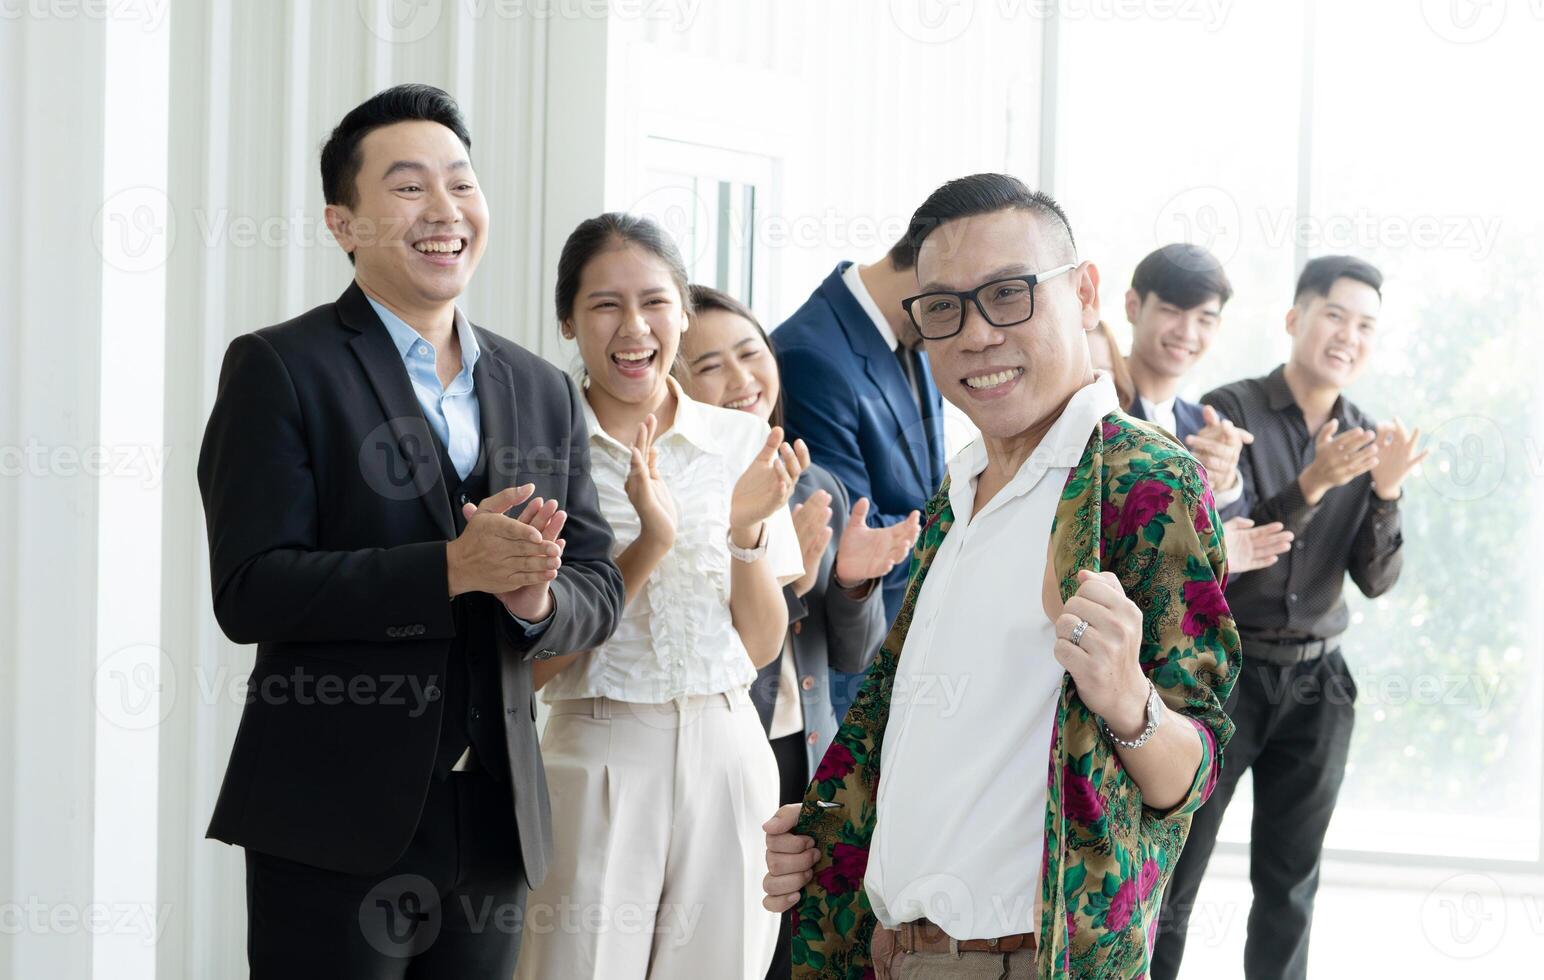 une groupe de gens sont souriant et applaudir, avec un homme dans une floral chemise permanent dehors. scène est content et fête photo